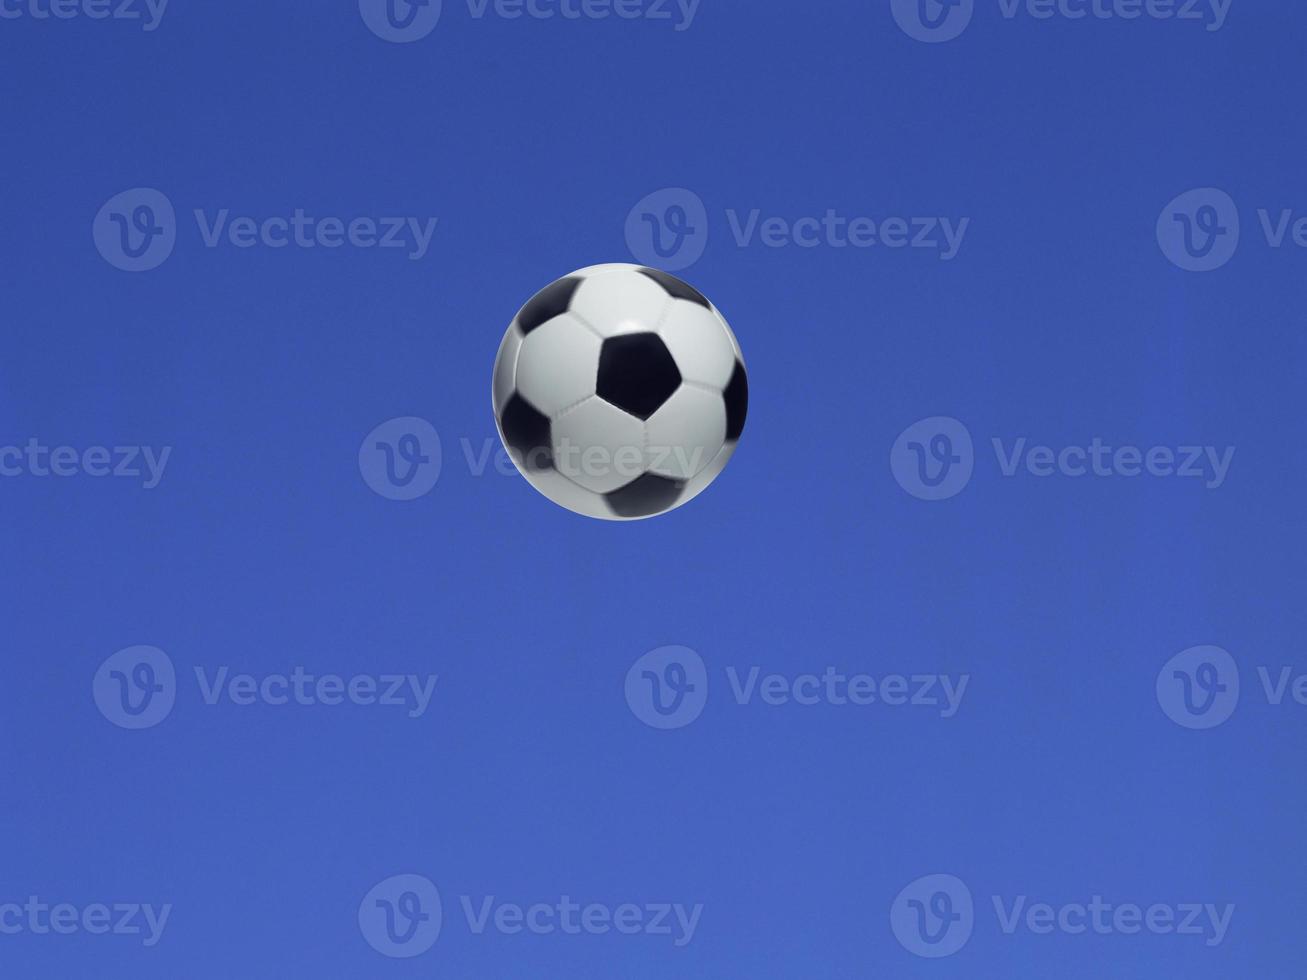 en fotboll skjuten i luften med blå himmel bakgrund foto